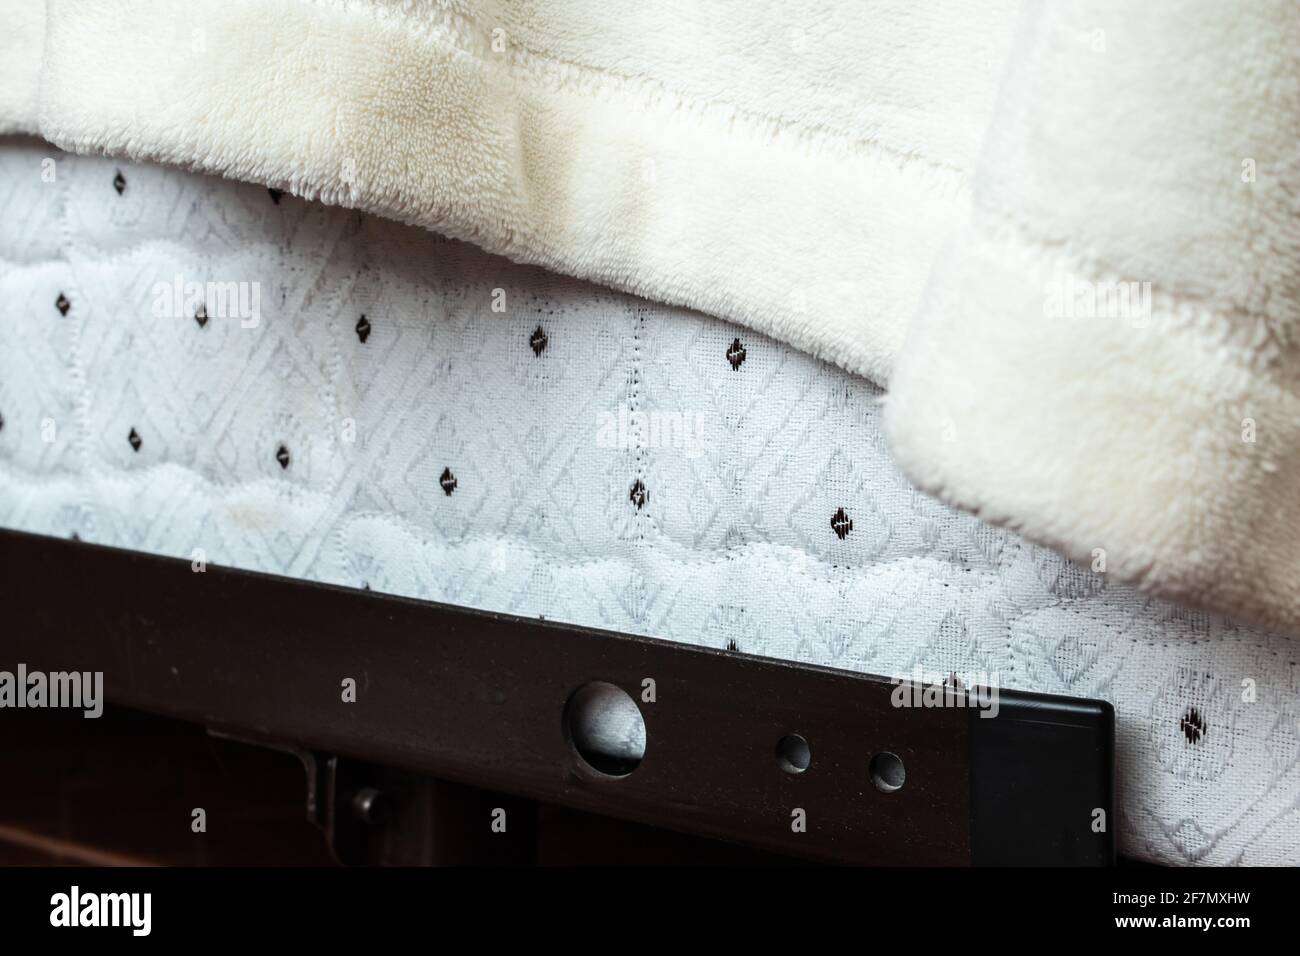 Aus nächster Nähe Ecke einer Bettdecke mit Bettmuster Feder mit schwarzen Punkten auf dem Stoff, bedeckt von einer drapierten fuzzy weißen Decke auf einem Stahlrahmen aus Metall. Stockfoto